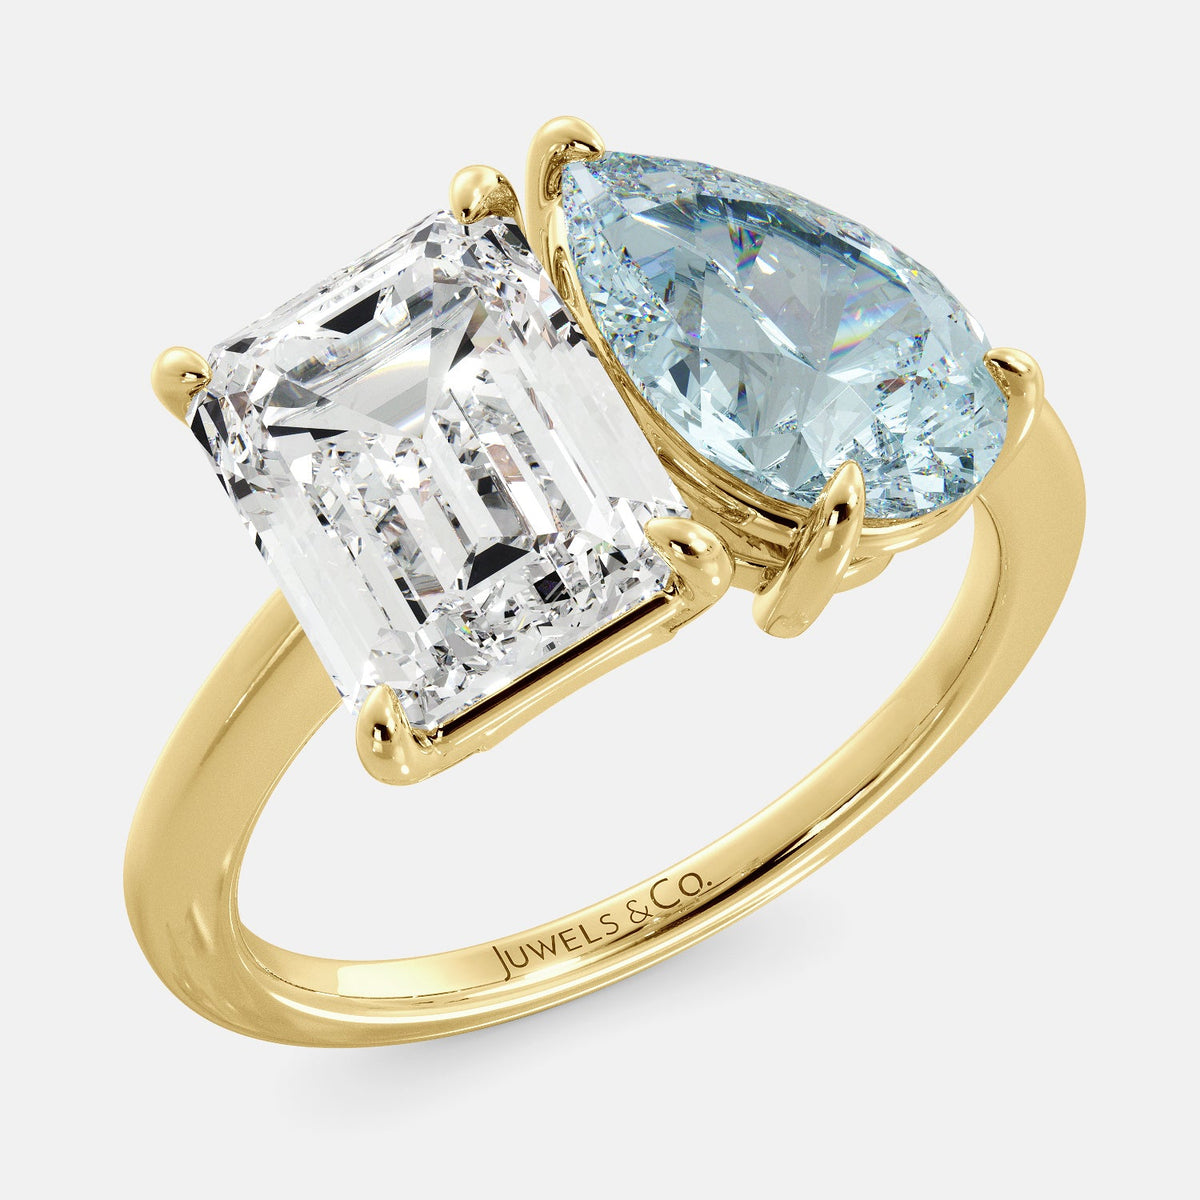 April Birthstone RING; Juwels & Co. June (Moonstone) / Rose Gold